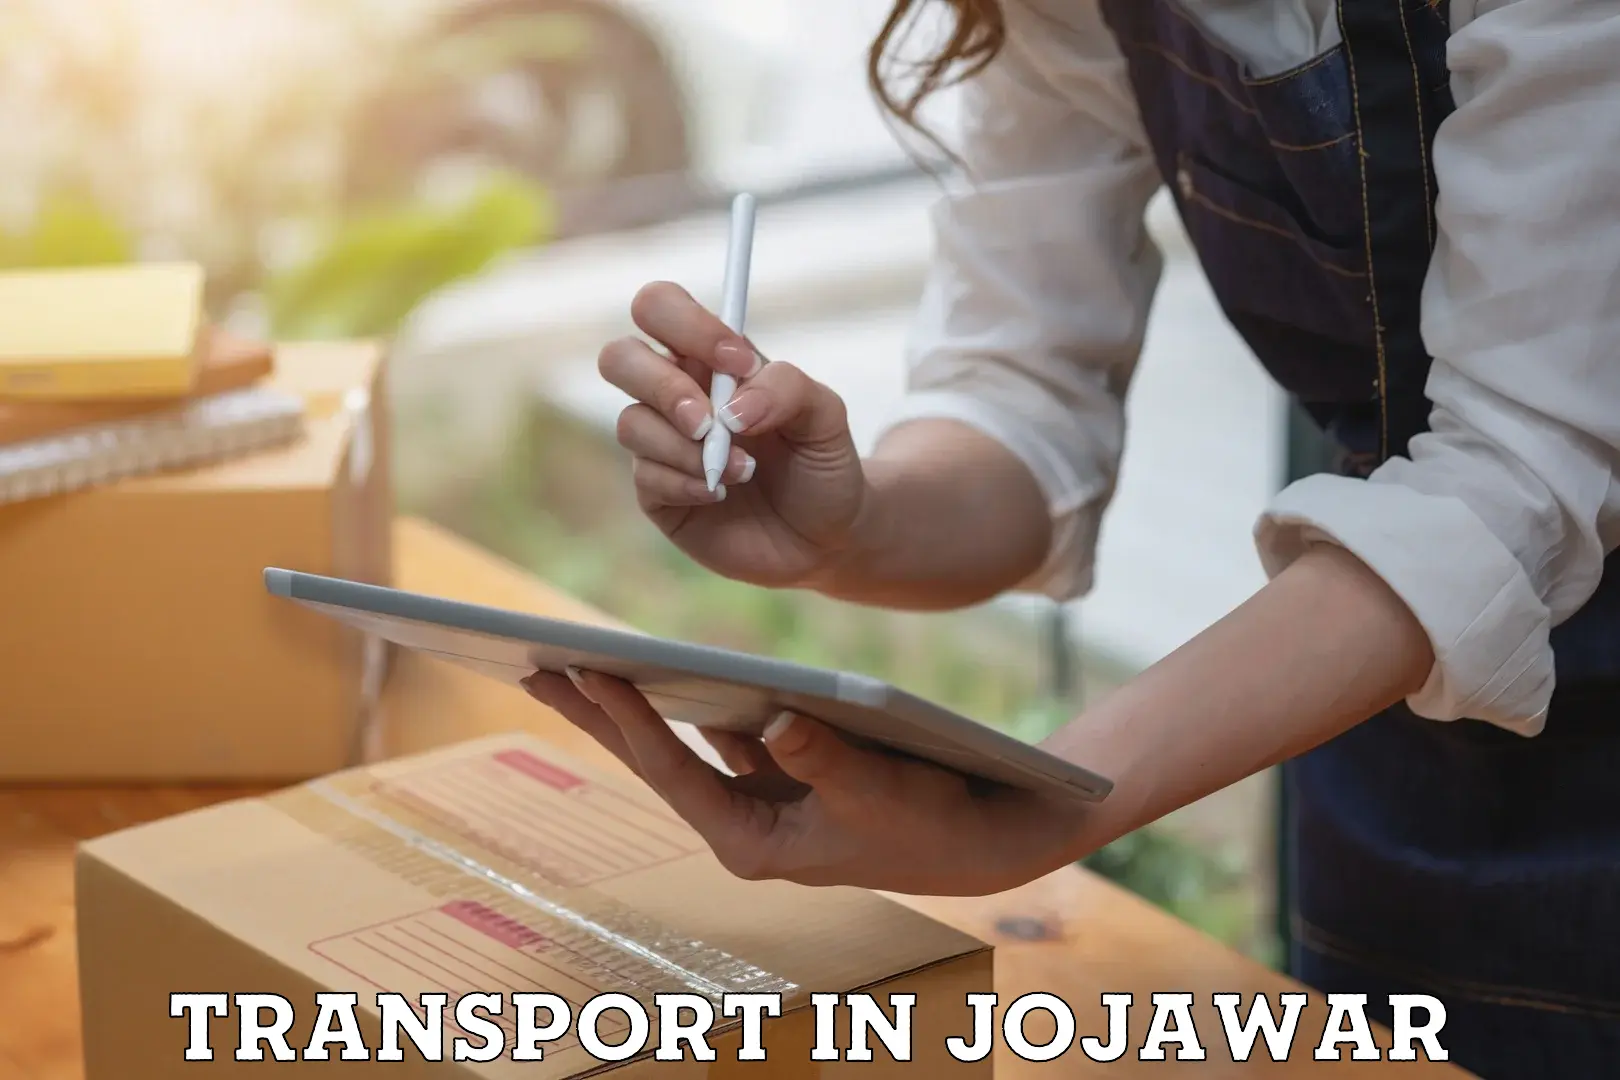 Logistics transportation services in Jojawar